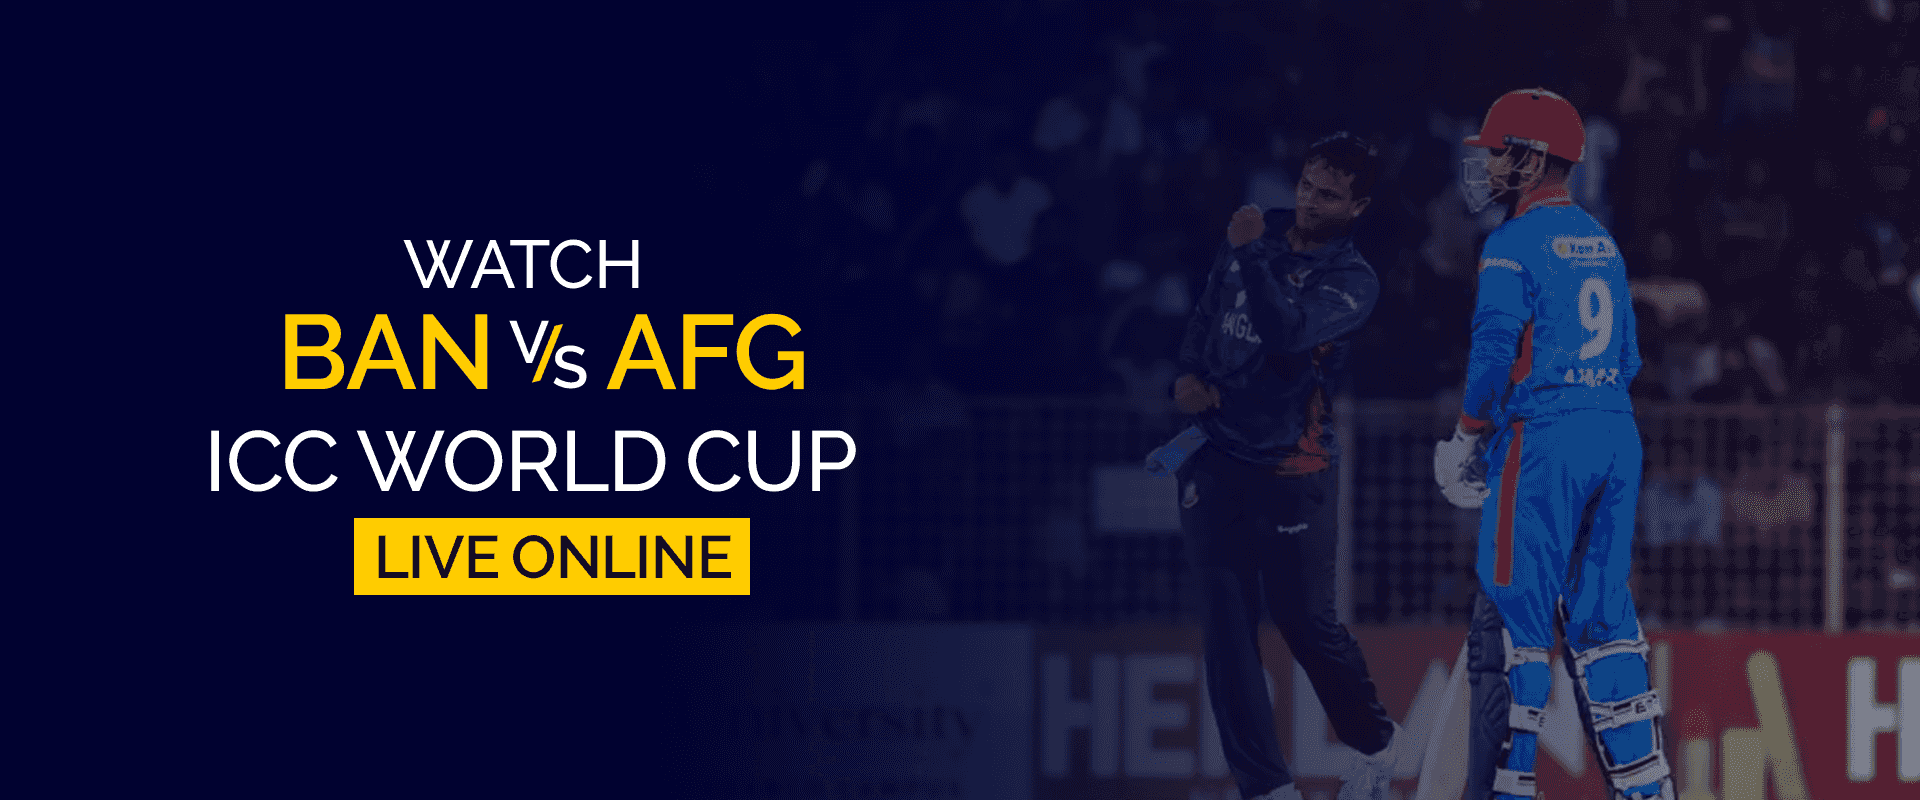 BAN vs AFG ICC Dünya Kupası Canlı Çevrimiçi İzle